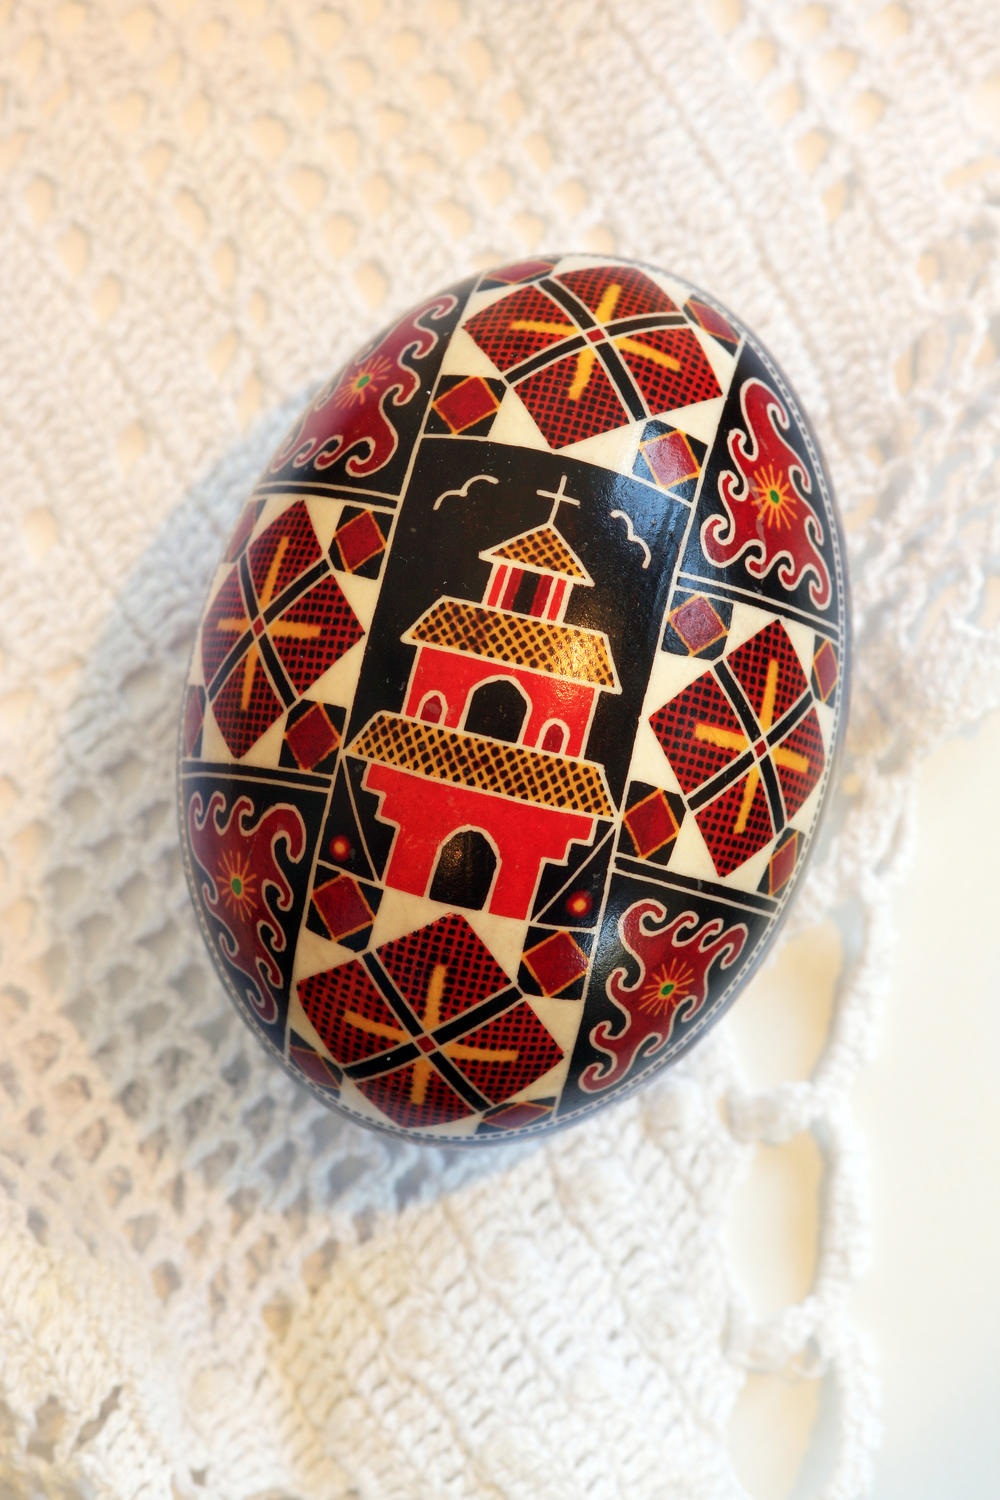 Dok se pripremamo za farbanje uskršnjih jaja, otkrivamo vam jedan veoma koristan trik.